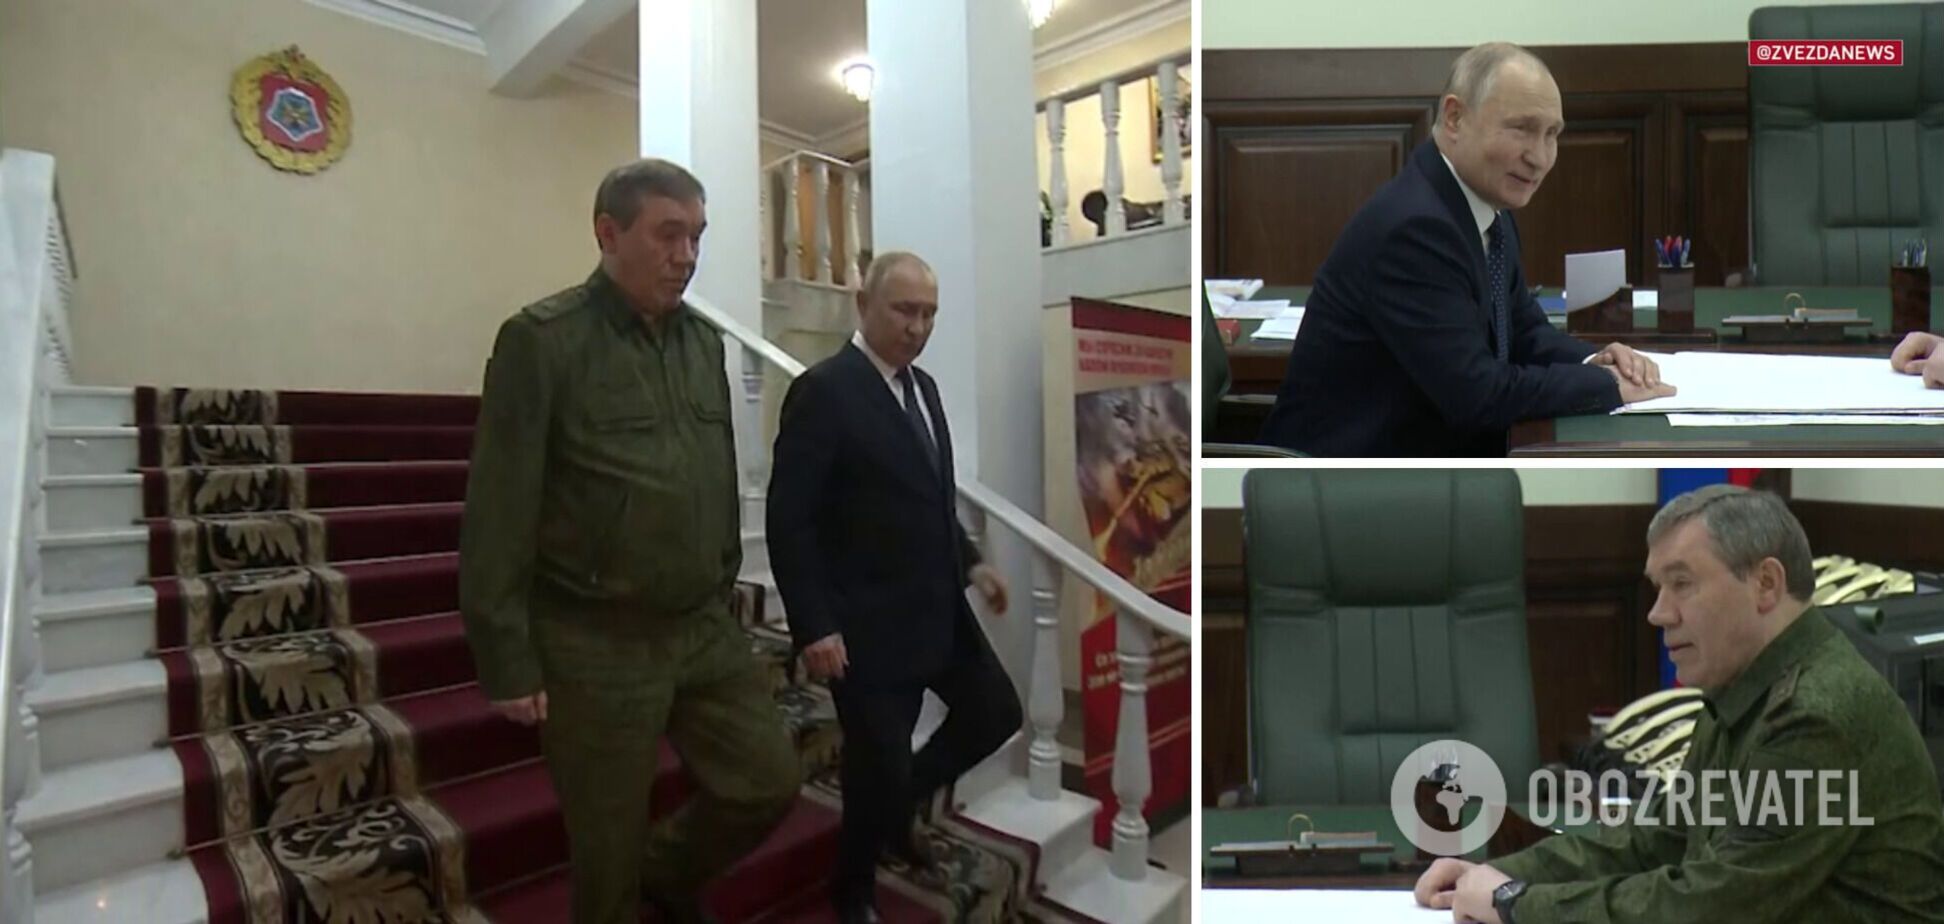 Помітили дивний момент під час зустрічі Путіна з Герасимовим